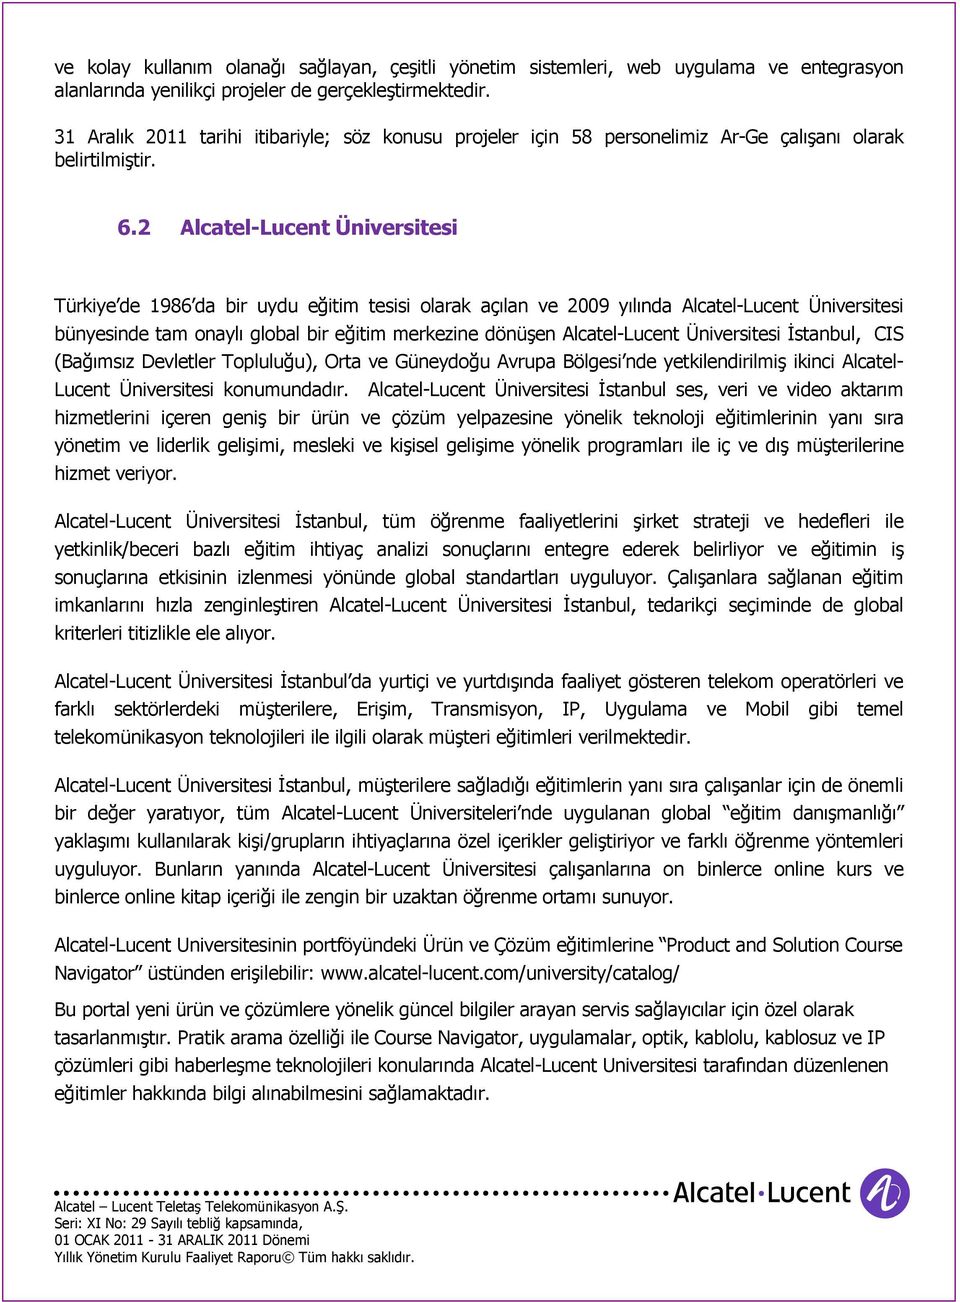 2 Alcatel-Lucent Üniversitesi Türkiye de 1986 da bir uydu eğitim tesisi olarak açılan ve 2009 yılında Alcatel-Lucent Üniversitesi bünyesinde tam onaylı global bir eğitim merkezine dönüşen